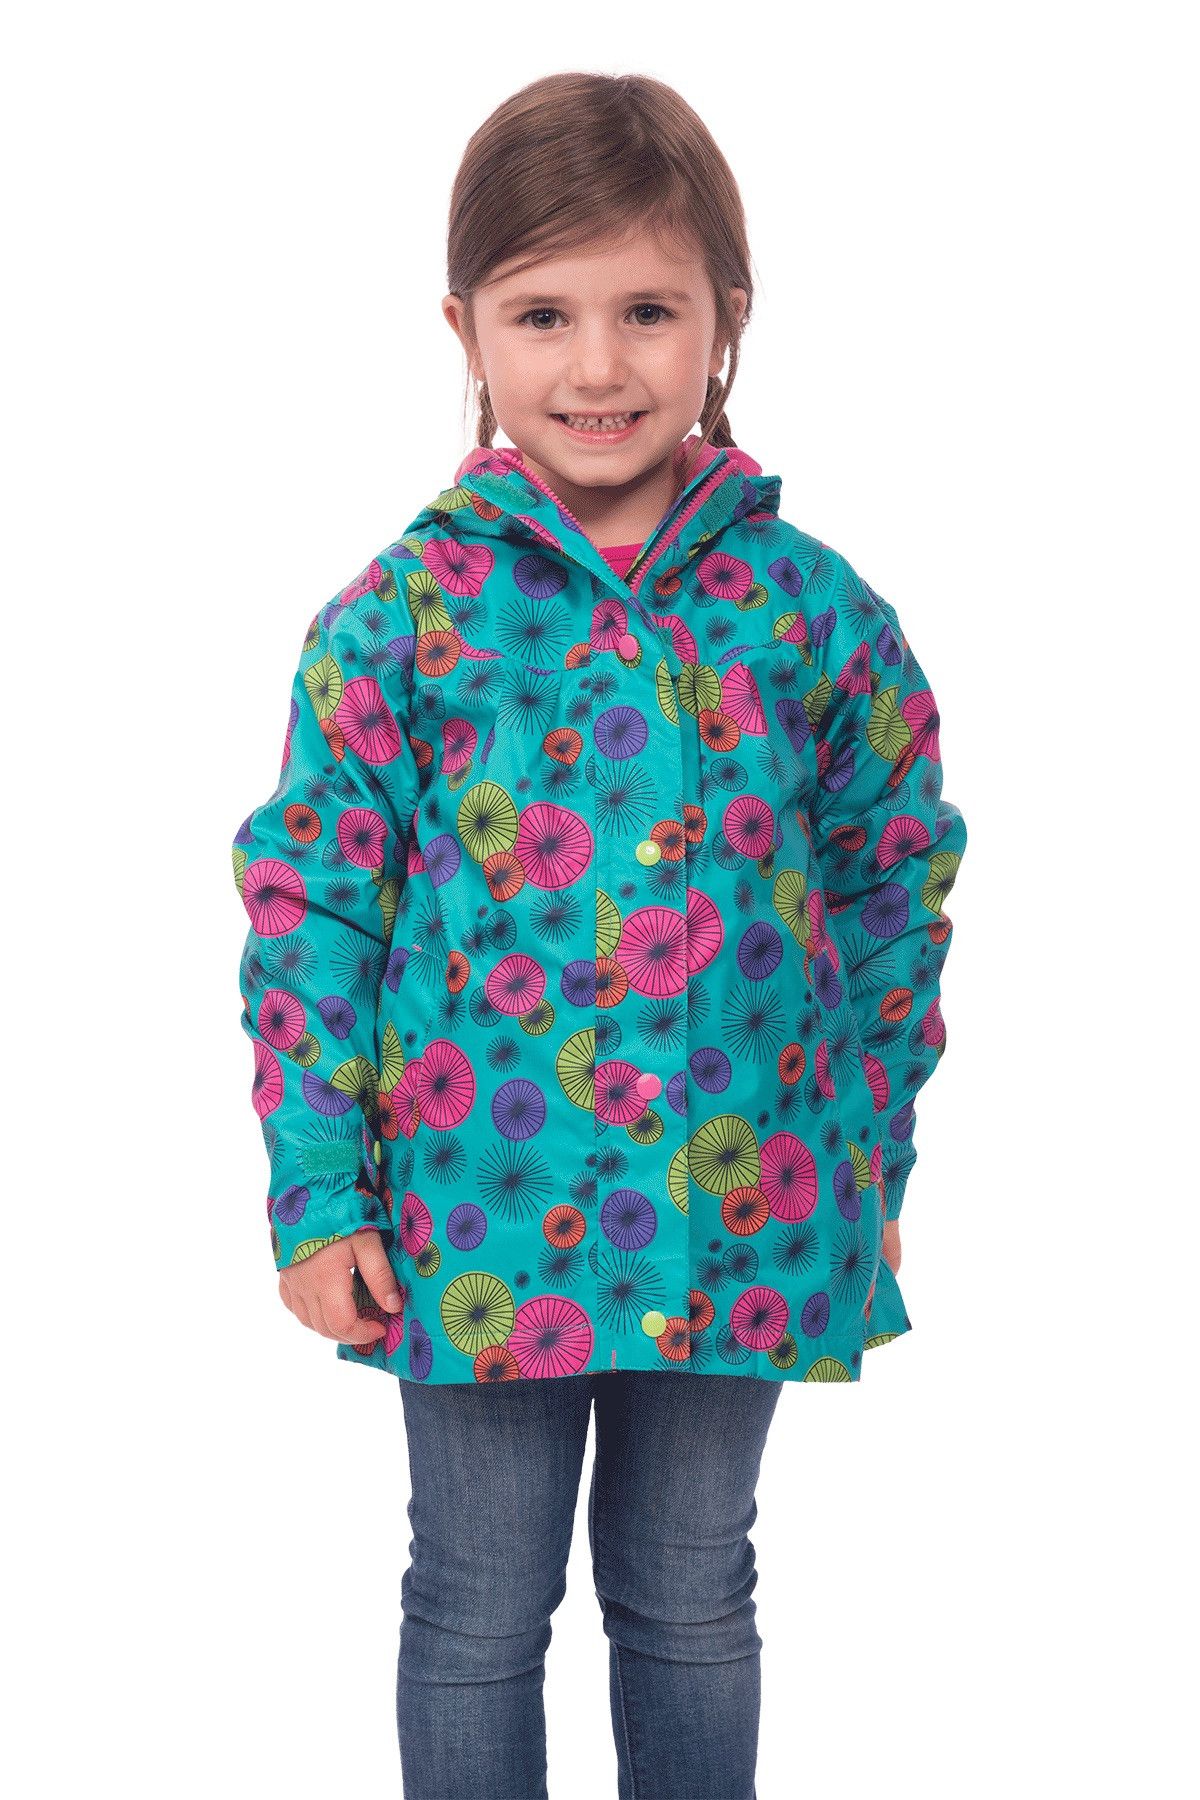 Evie Girls Waterproof Printed Hooded Rain Jacket | Target Dry